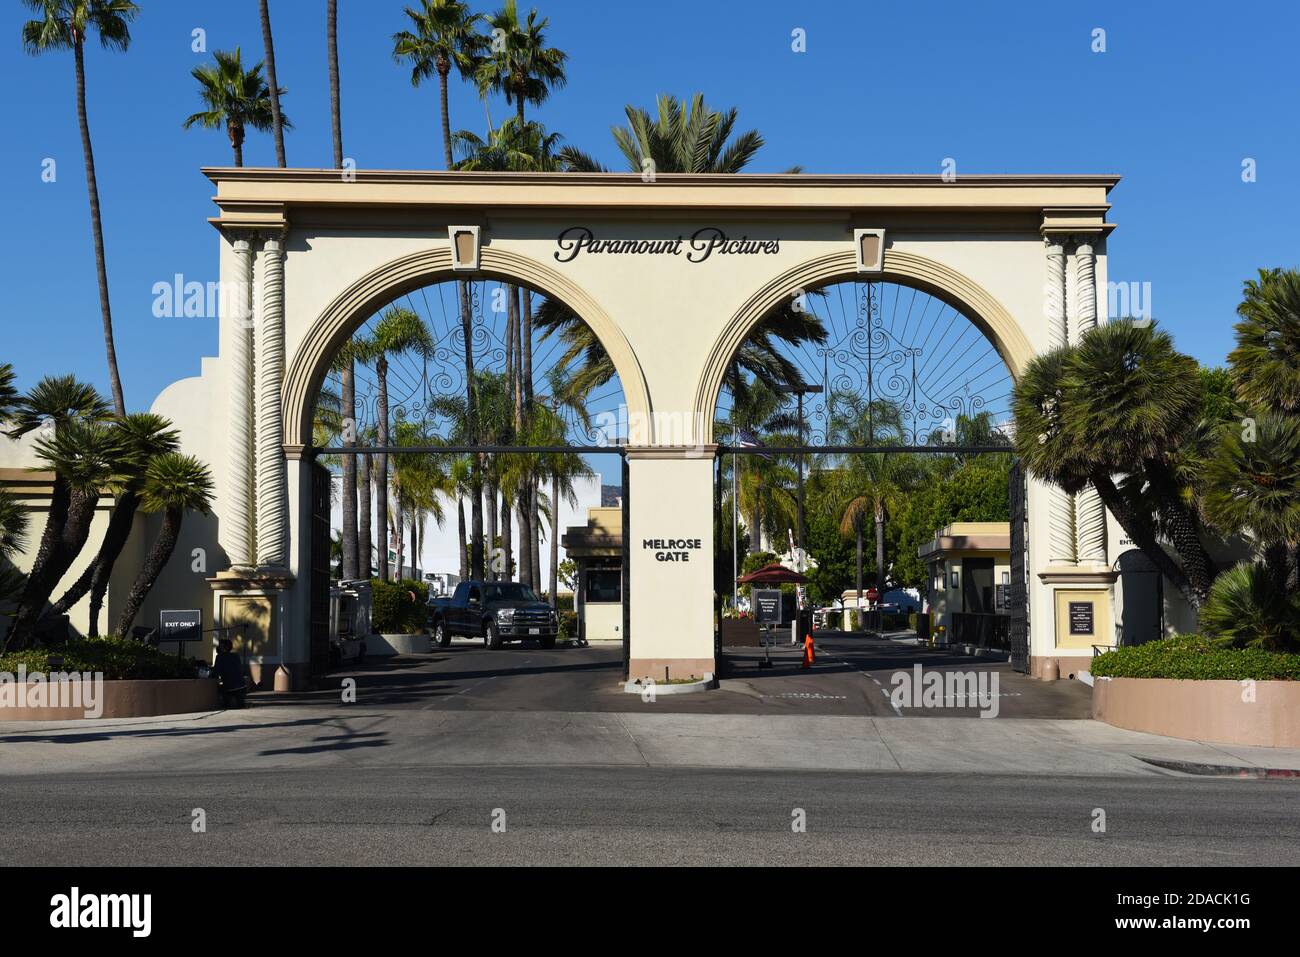 HOLLYWOOD, KALIFORNIEN - 10 NOV 2020: Paramount Pictures ikonisches Tor auf der Melrose Avenue, einem amerikanischen Filmstudio und Tochterunternehmen von ViacomCBS. Stockfoto